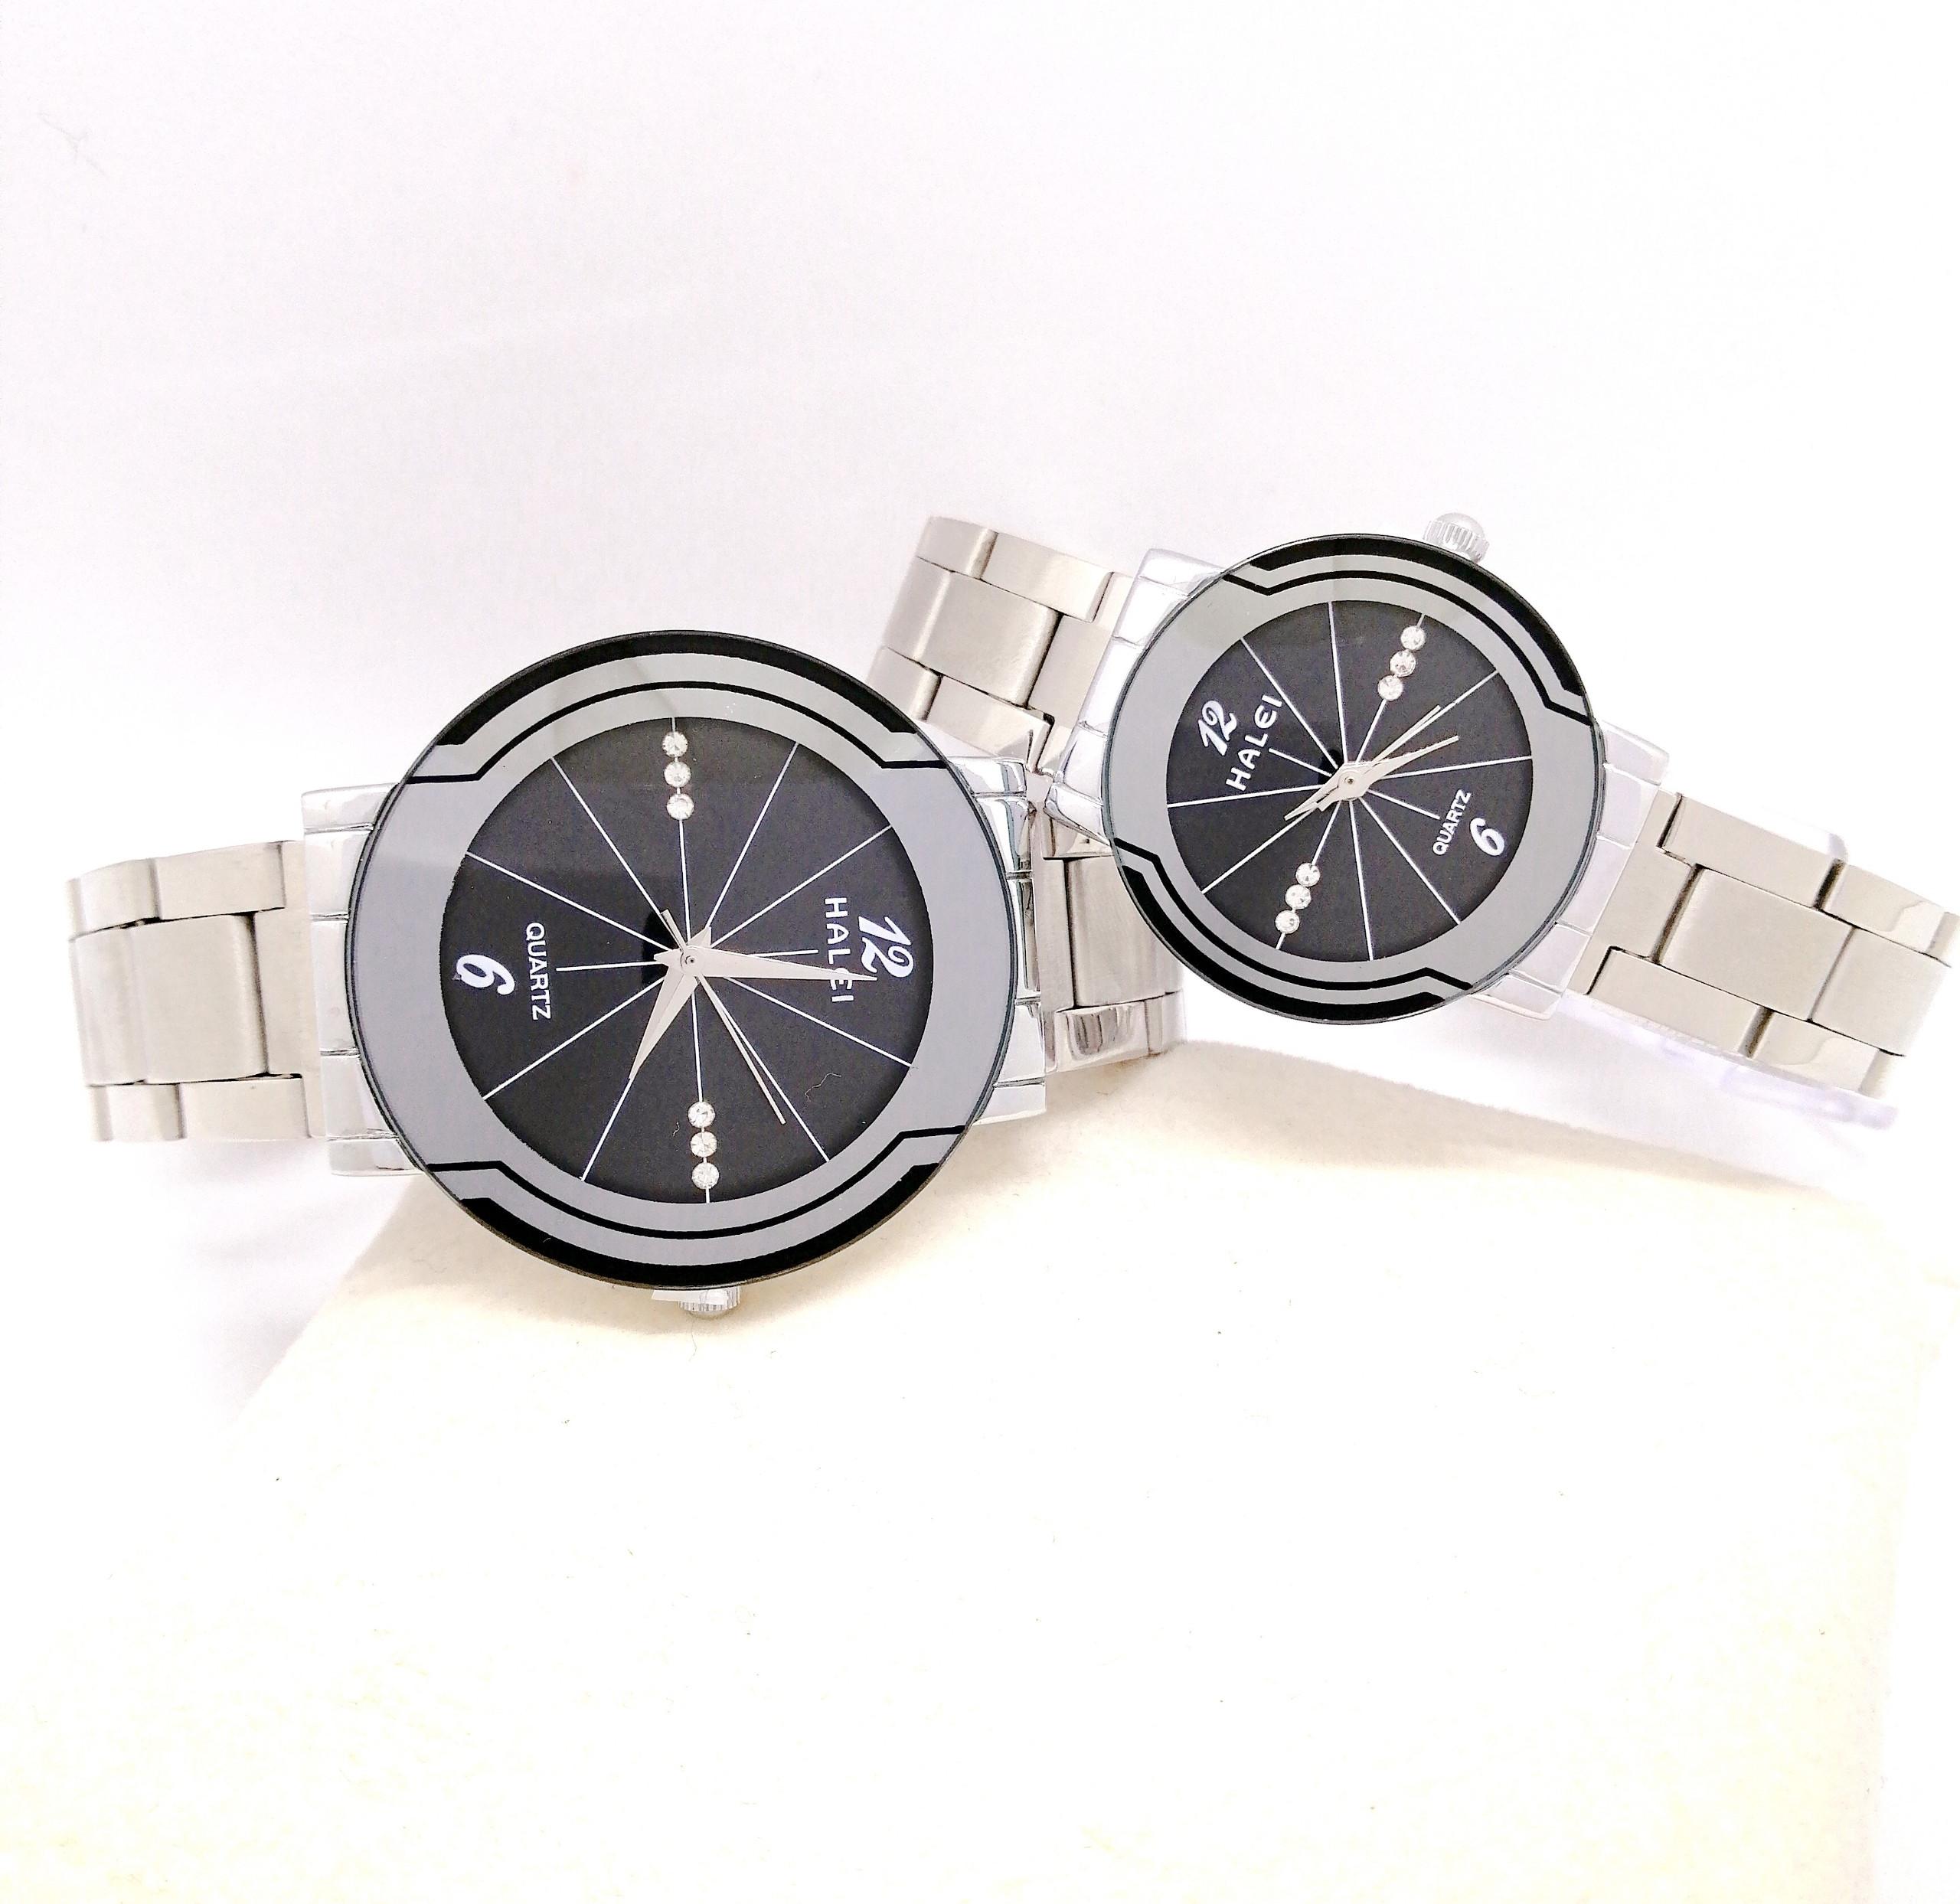 Cặp đồng hồ Nam Nữ Halei - HL4570 Dây trắng